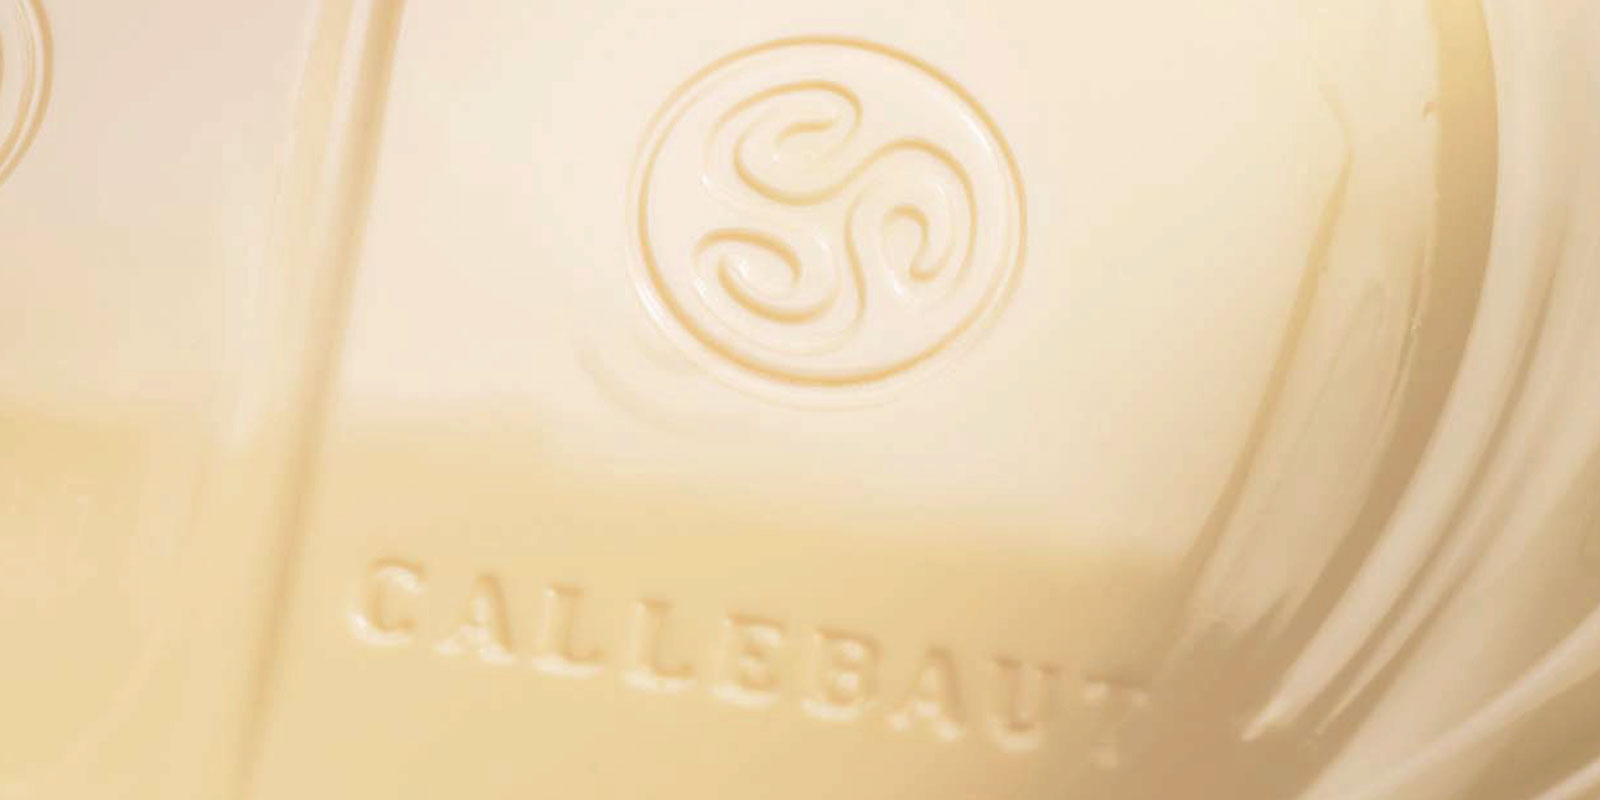 Bijele cokolade iz Callebauta Bijela cokolada je rezultat mijesanja kakao maslaca, mlijeka u prahu i secera. Omjer mijesanja ovih sastojaka - na primjer vanilin, vanilija ili lecitin - odreduje okus konacnog proizvoda.